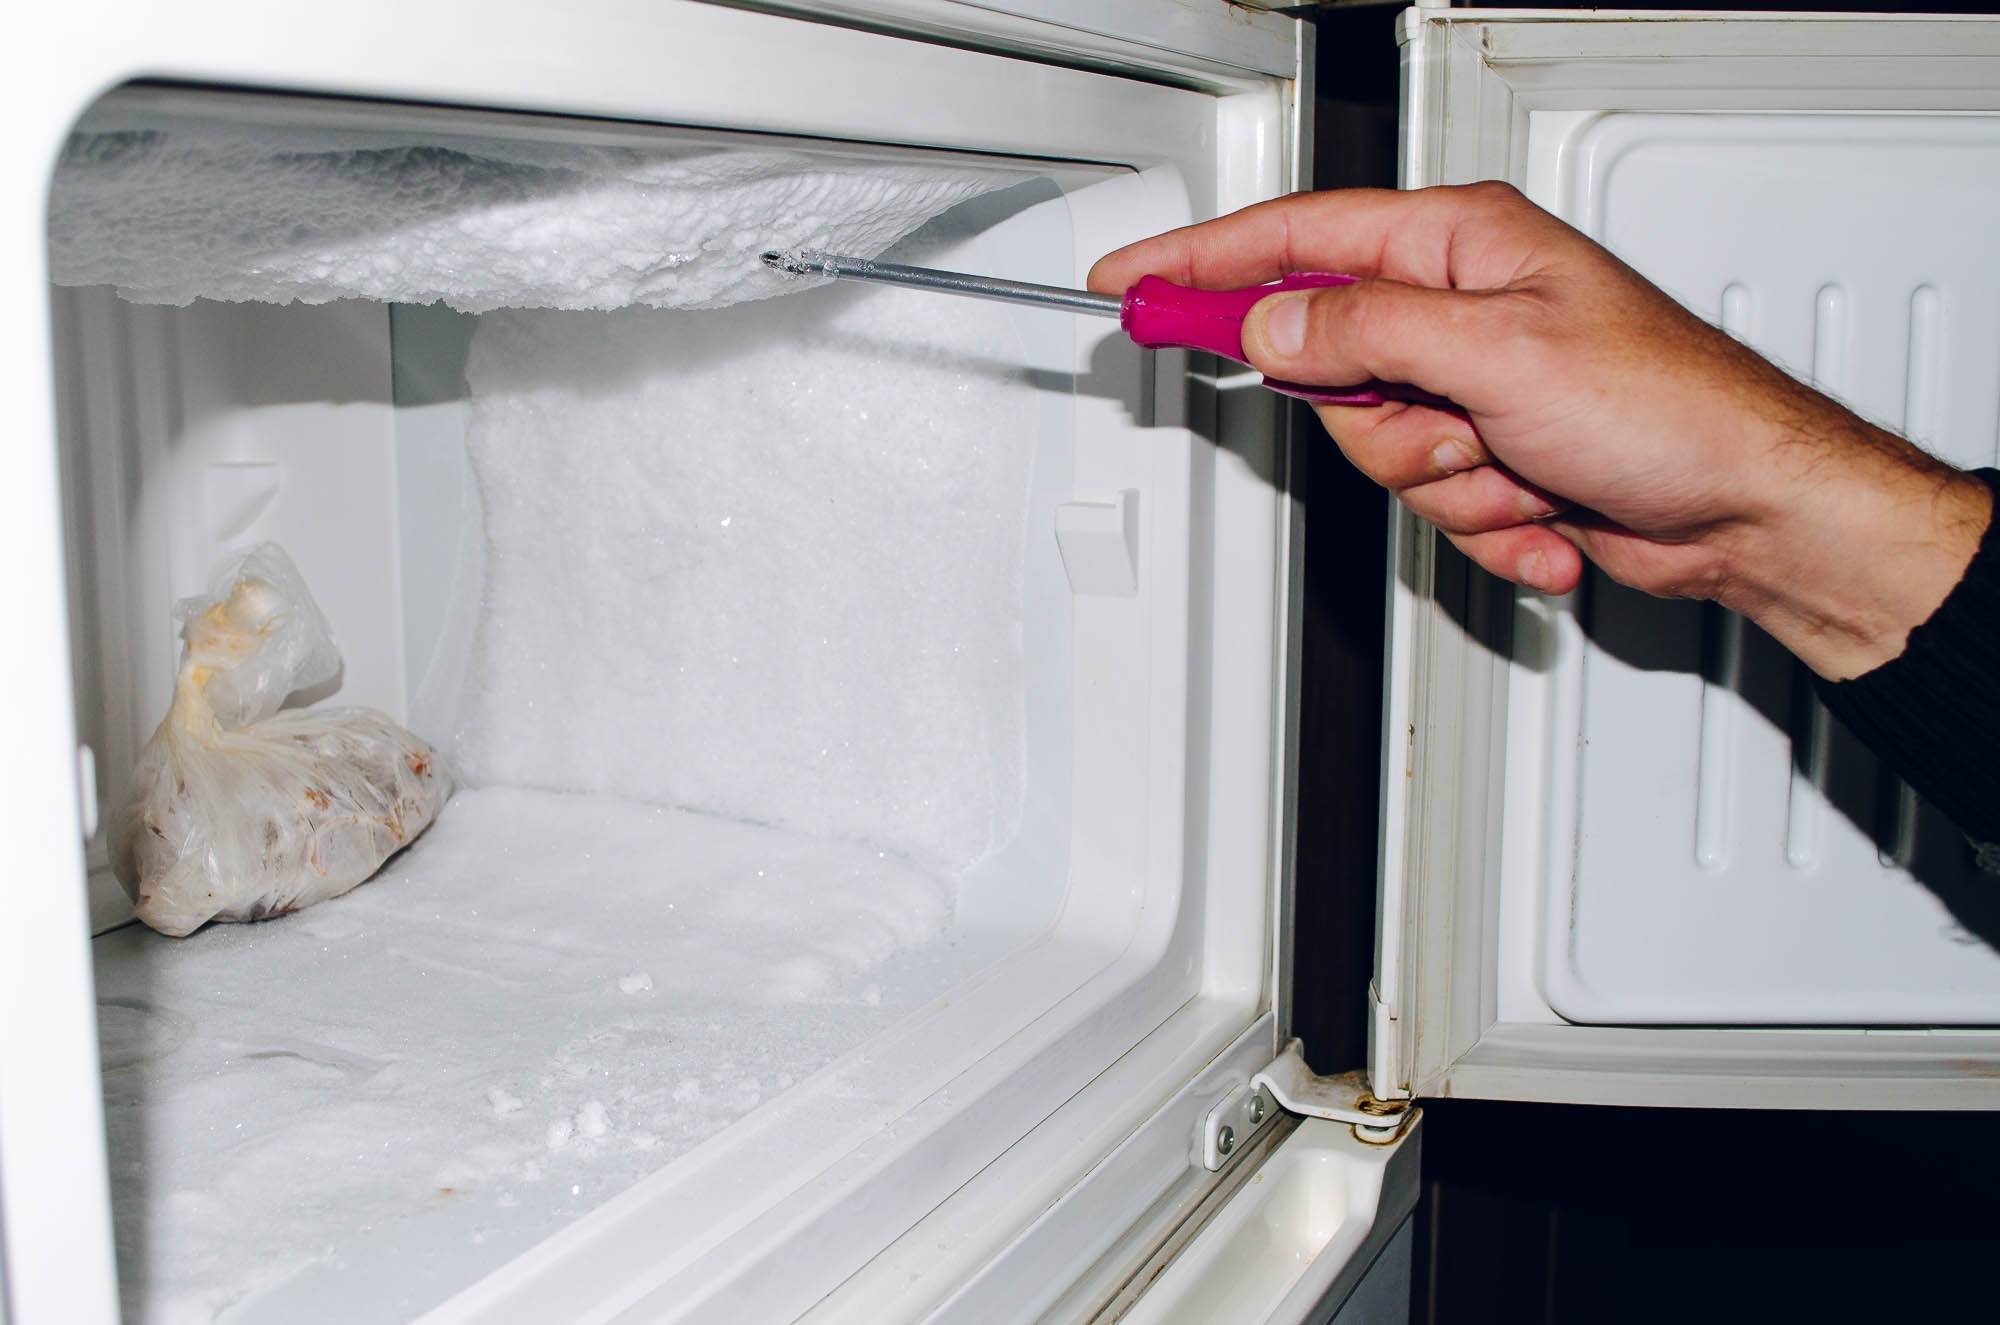 Ремонт холодильников своими руками: диагностика поломок и неисправностей в домашних условиях